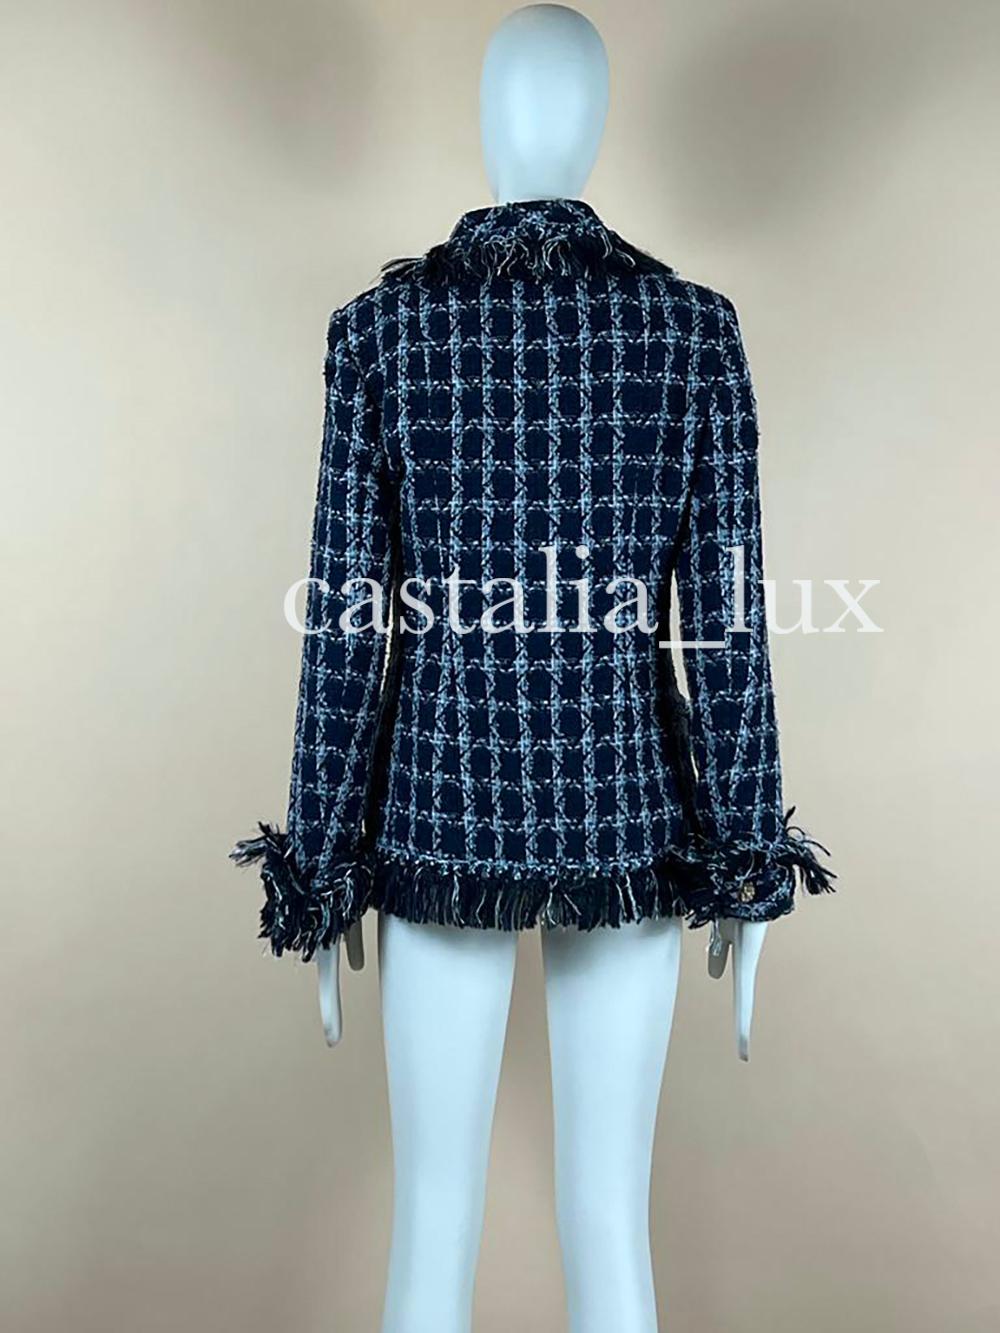 Chanel 11K$ Paris / Dallas Runway Tweed Jacket For Sale 9